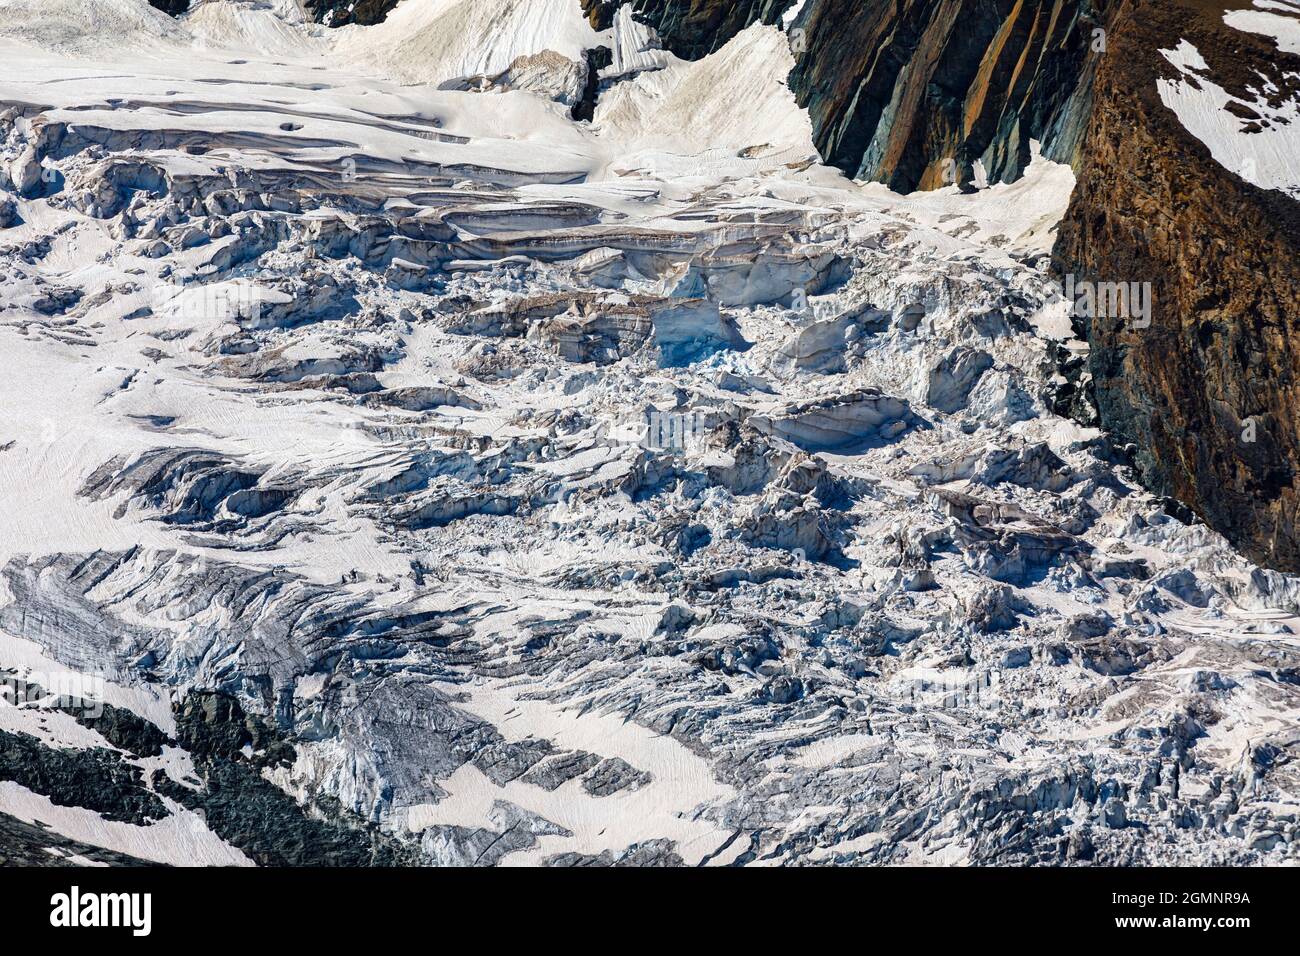 Detail des Eisfalles am Gornergletscher vom Gornergrat aus gesehen, einem felsigen Kamm der Pennine Alps südöstlich von Zermatt, Wallis, Schweiz Stockfoto